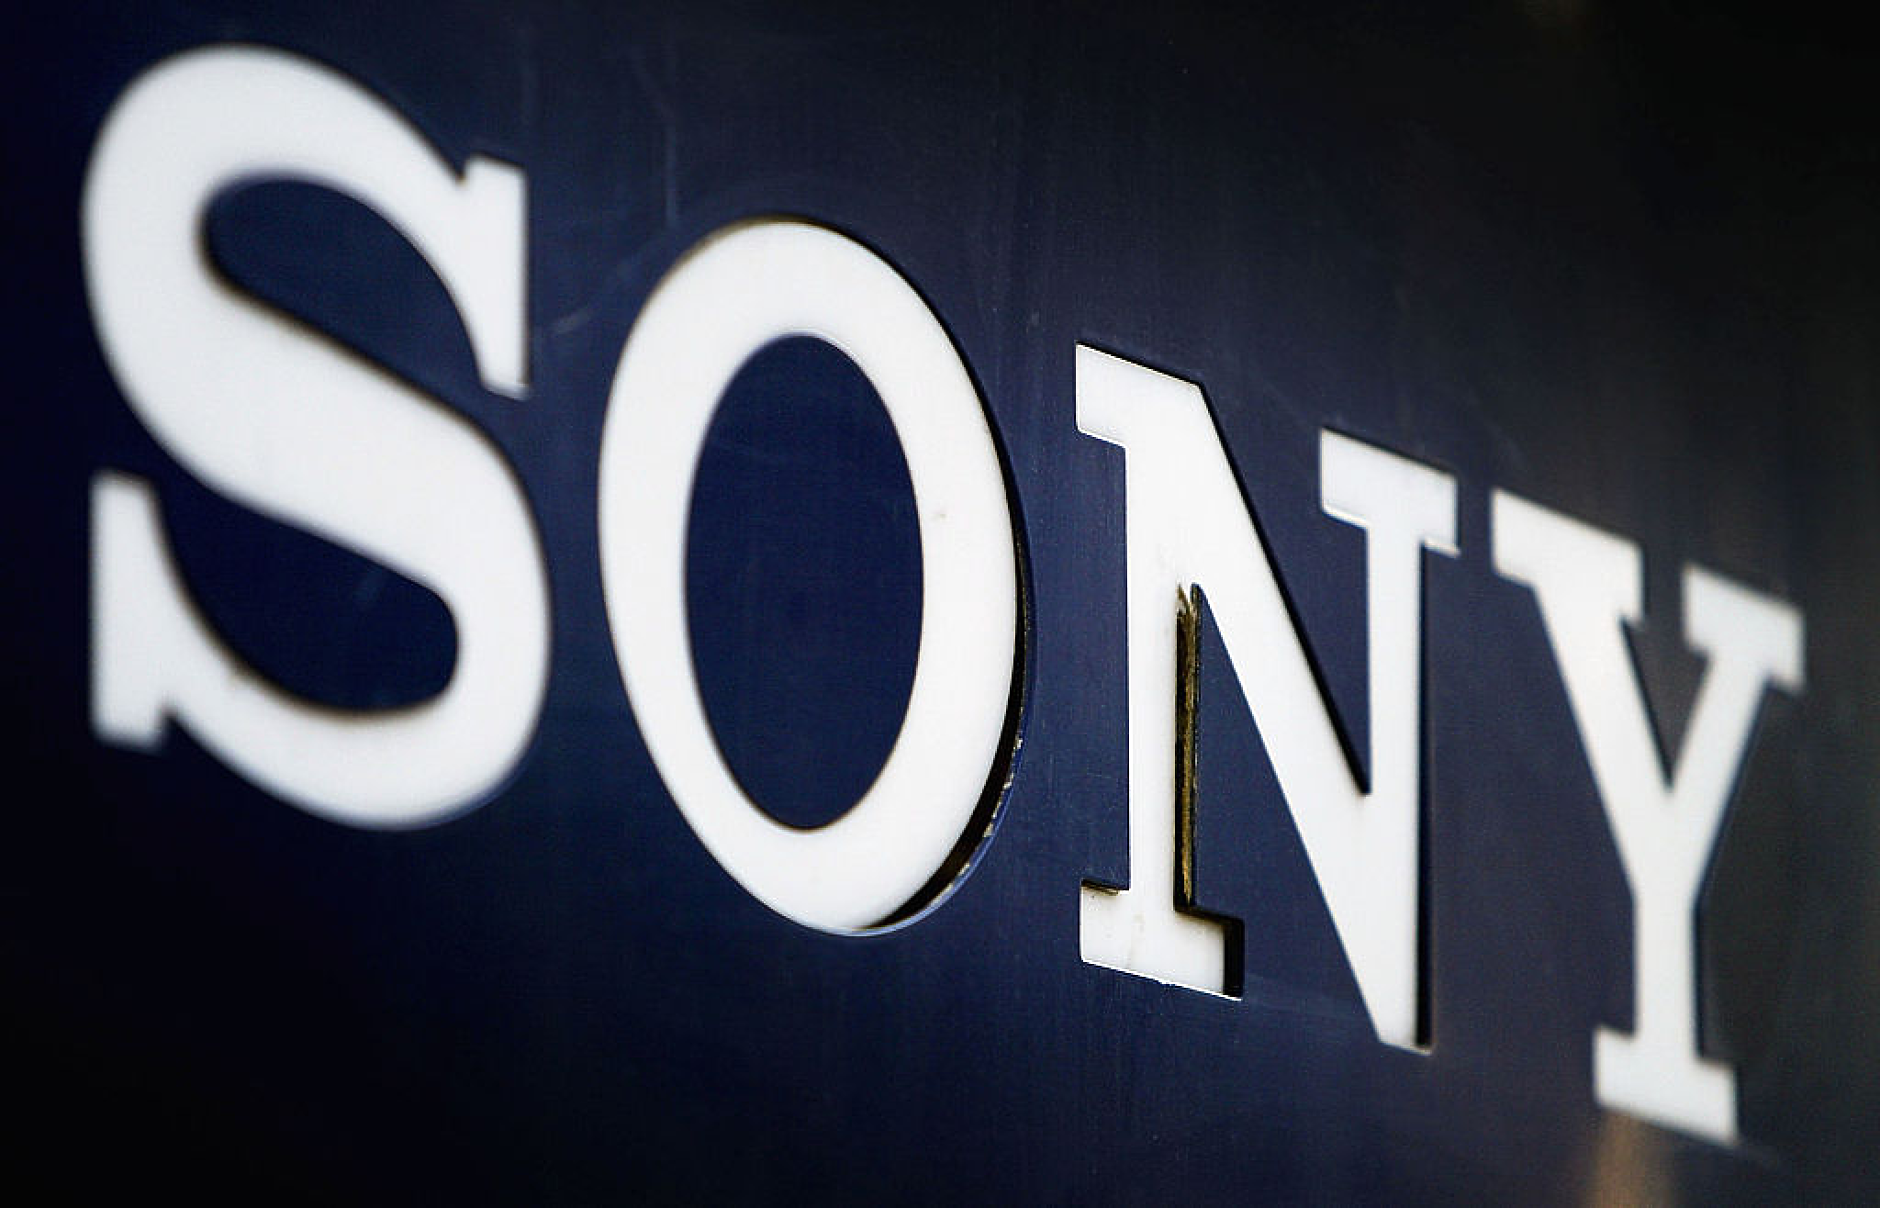 Блумбърг: Sony планира да прекрати сливане за 10 млрд. долара с индийската медийна компания Zee